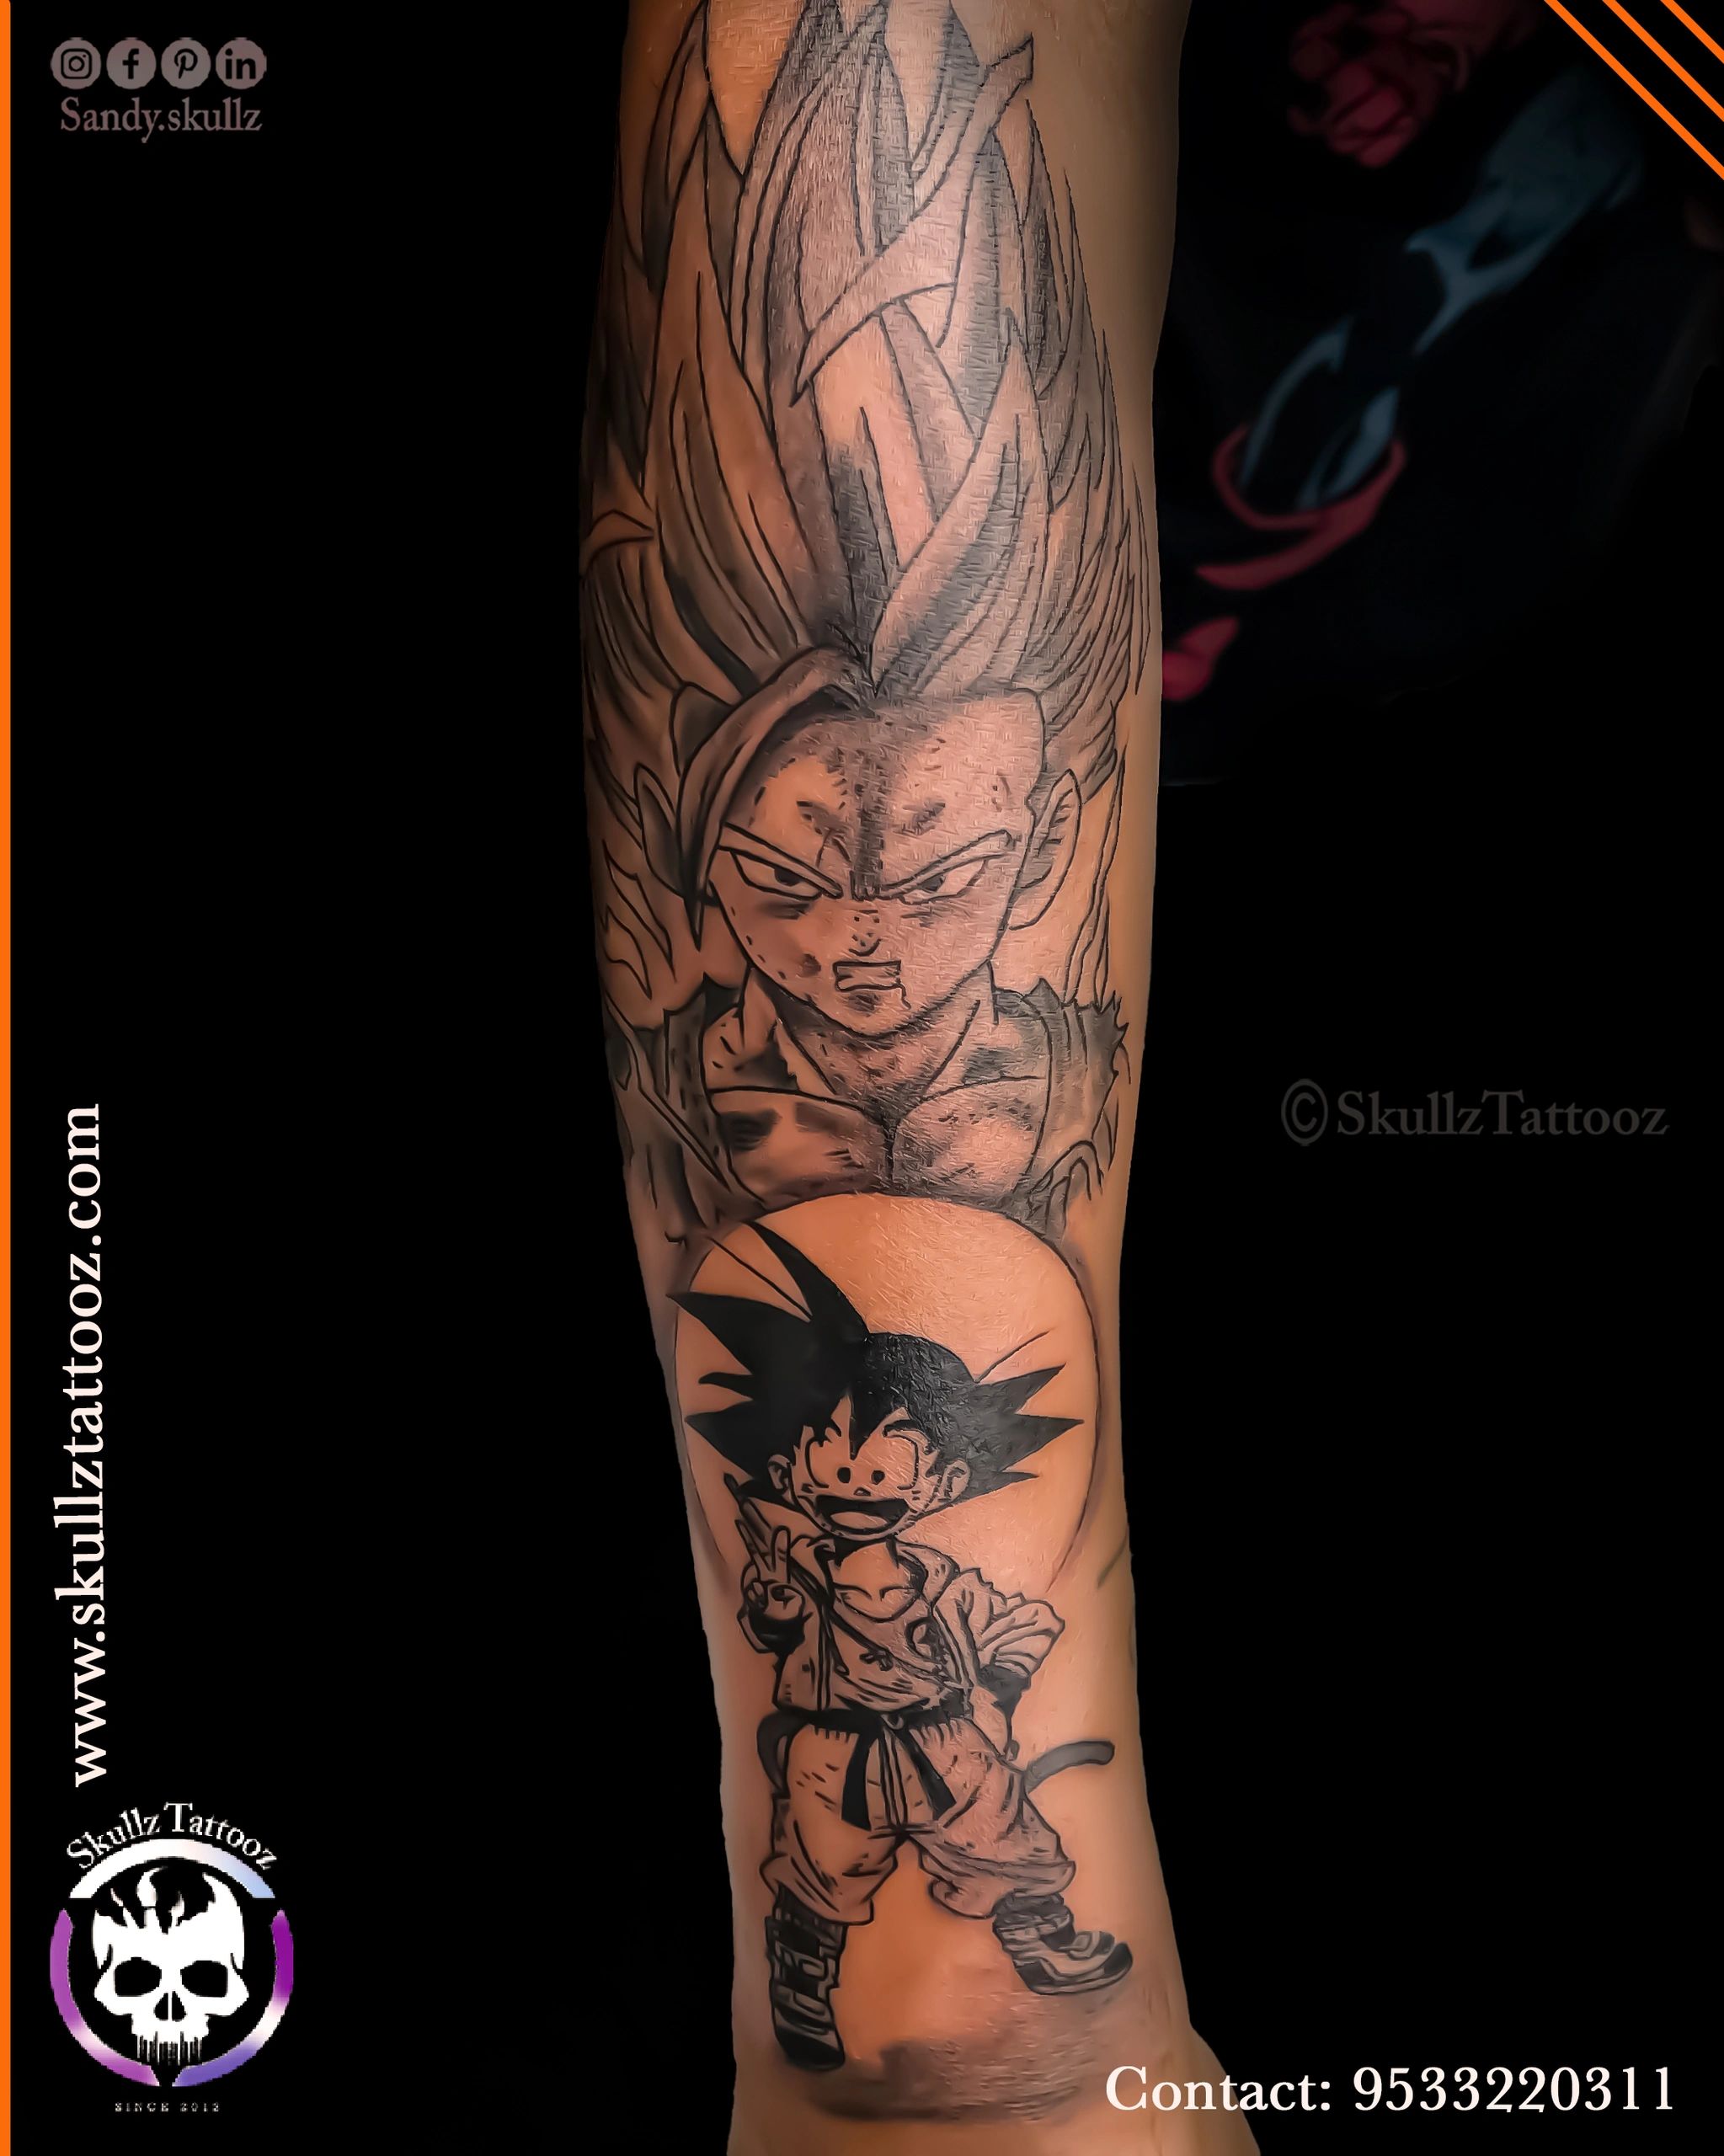 Amazing Tattoo by Chandrakesh Gupta  Chandu Art Tattoos  Facebook